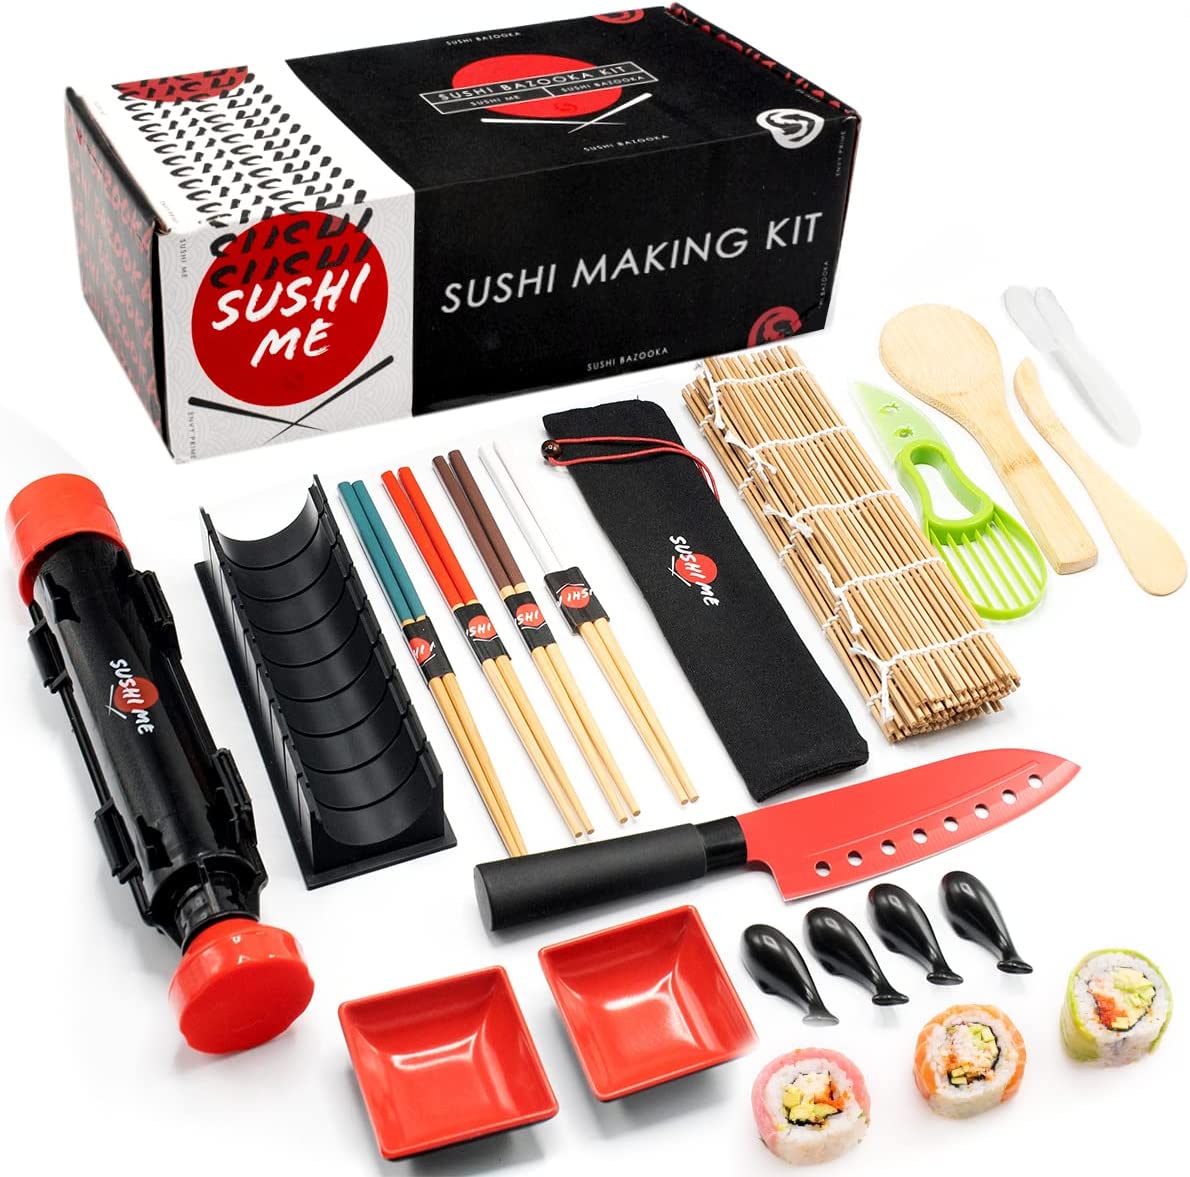 Sushi Making Kit – Sushi Kit For Home Includes Sushi Roller, Sushi Bazooka, Avocado Slicer, Sushi Knife, Sushi Bamboo Rolling Mat, Chop Sticks Pack…